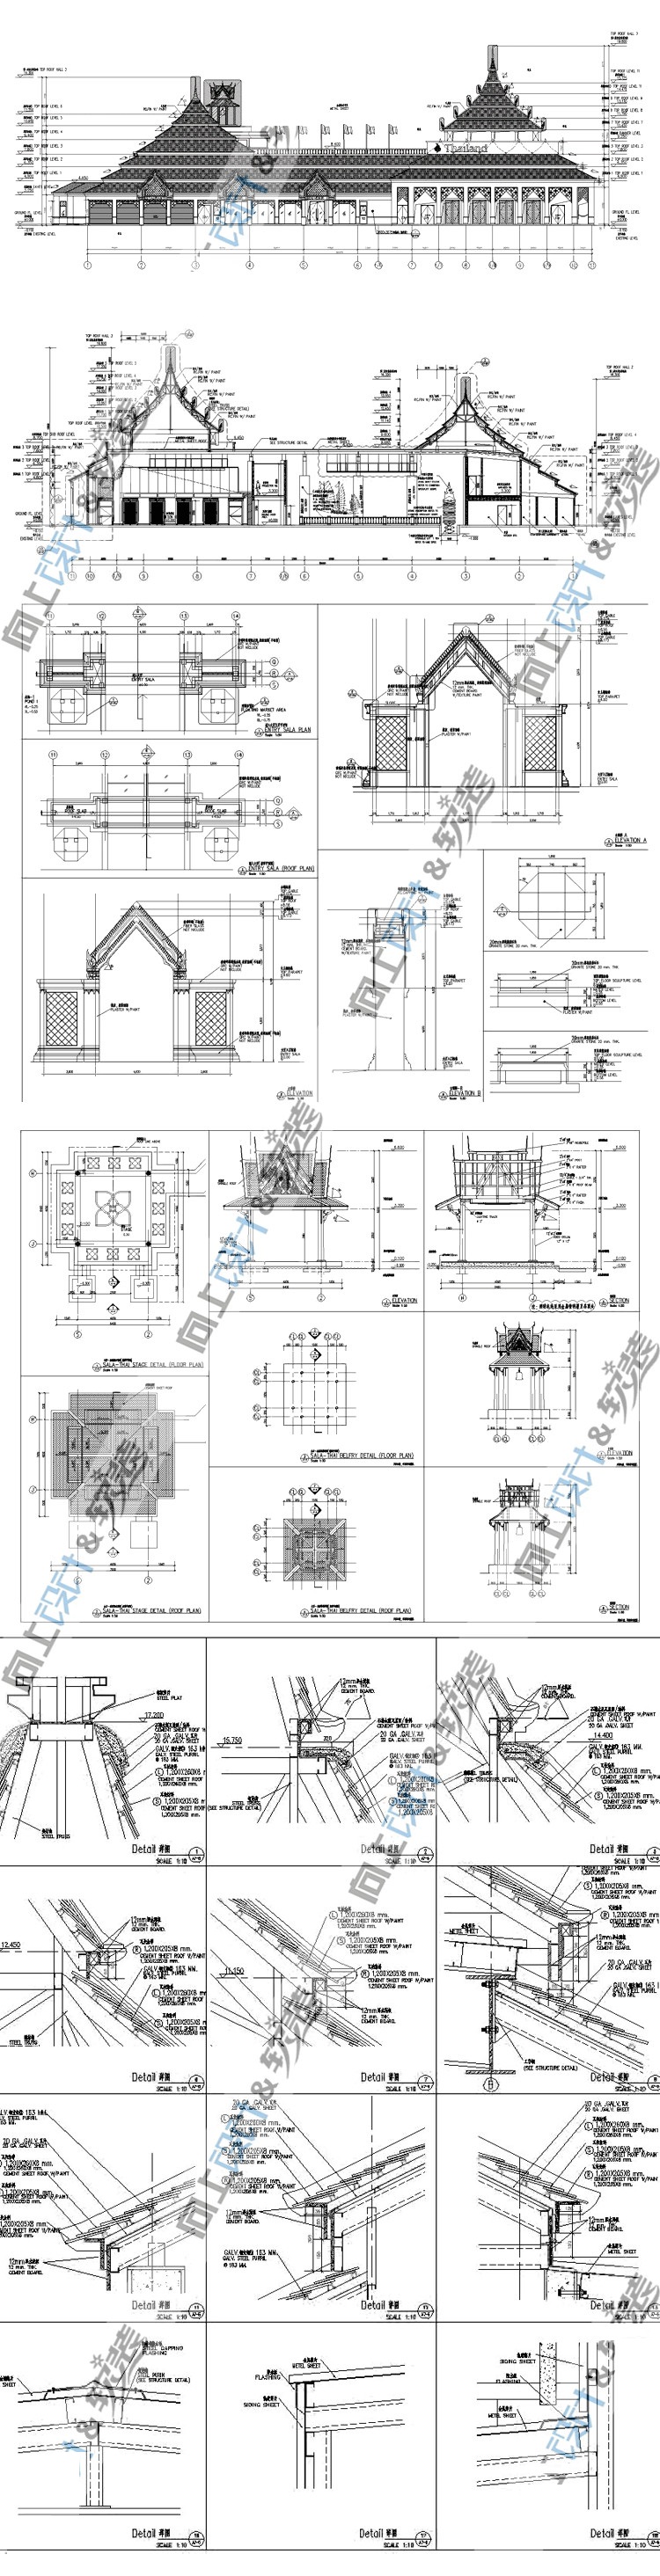 精选 展馆展览馆建筑设计平面施工方案图纸资料CAD源文件素材集 第5张